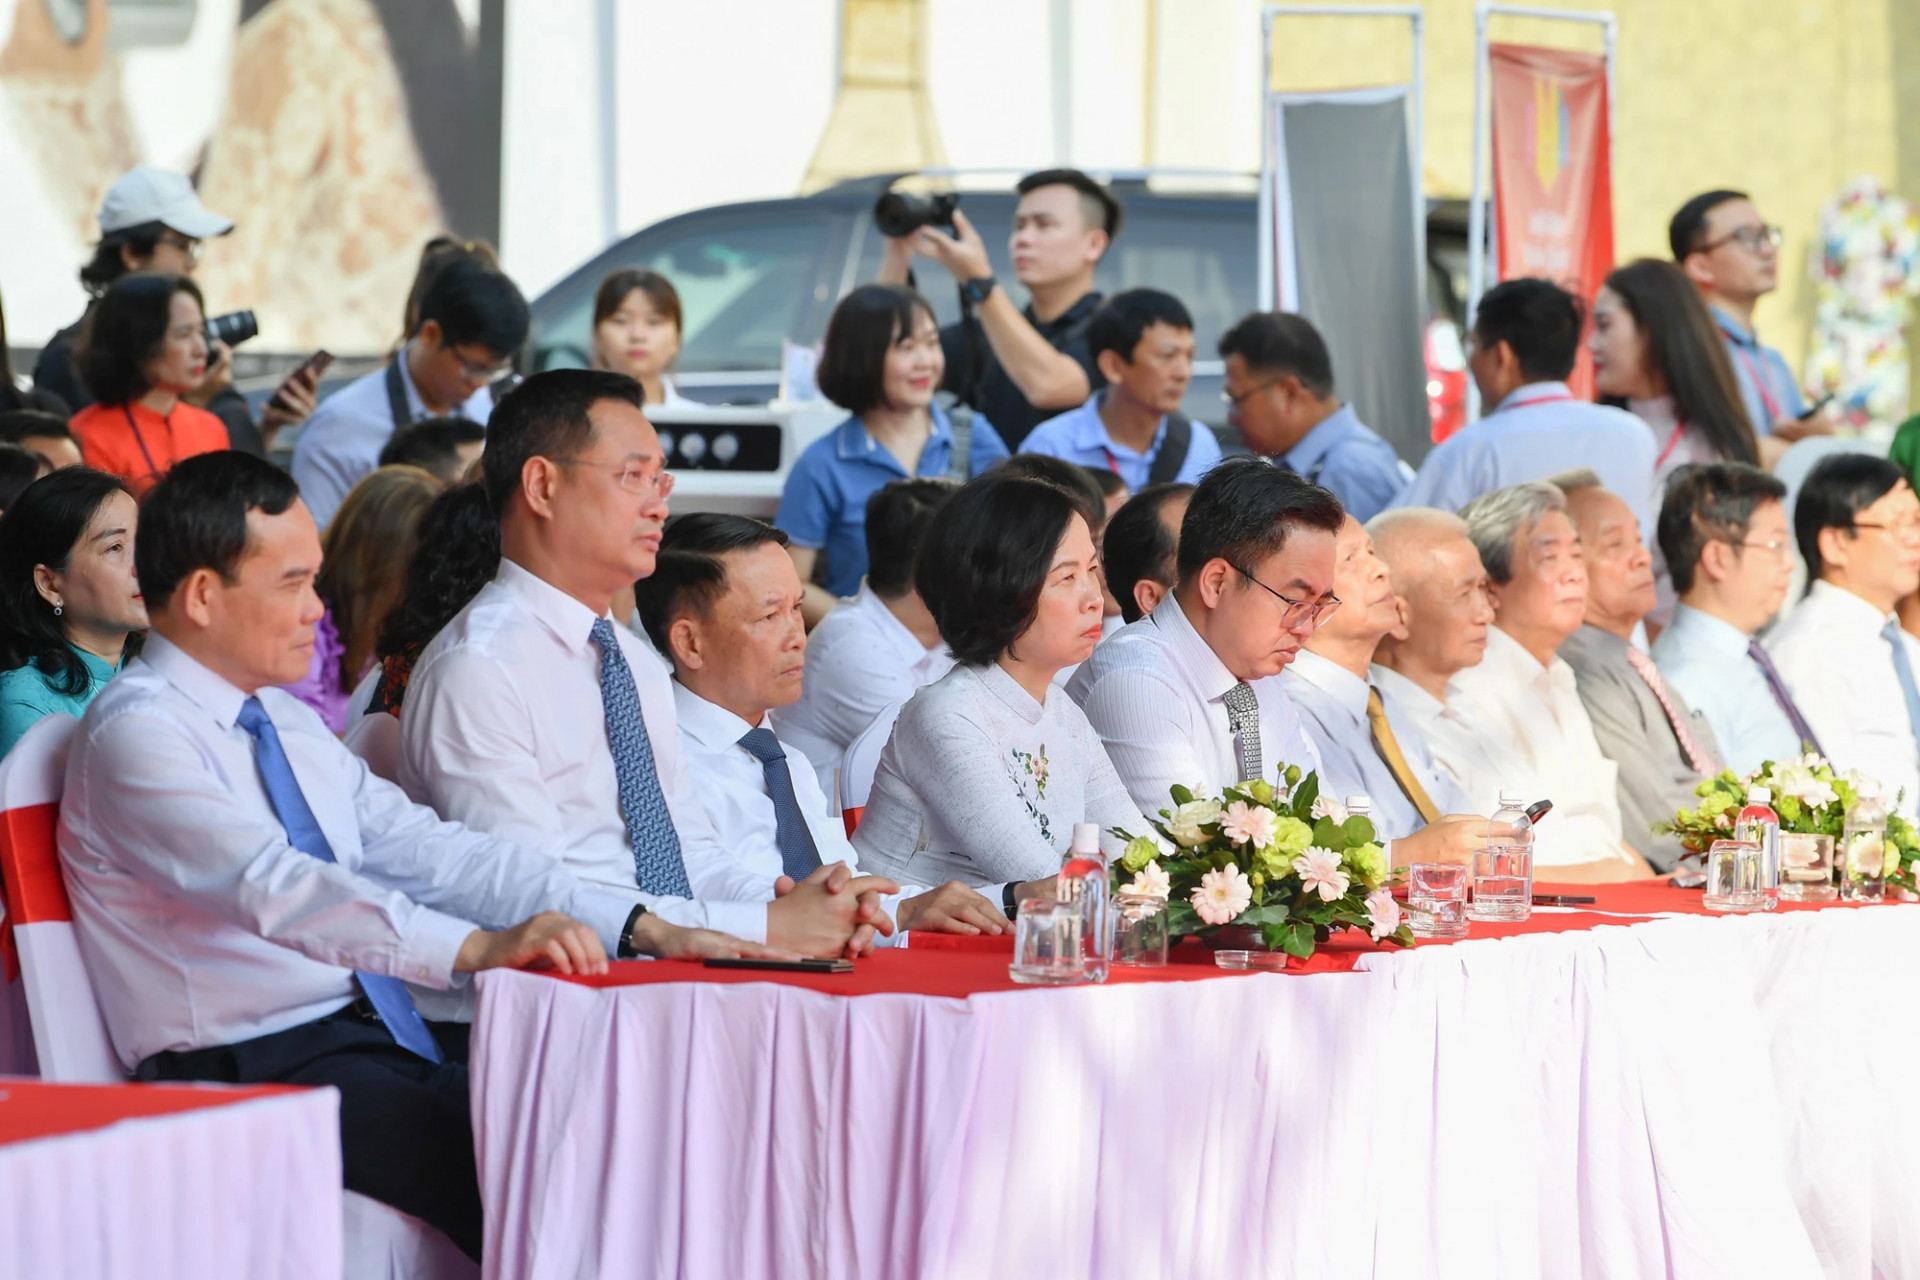 Đồng chí Trần Lưu Quang, Ủy viên Trung ương Đảng, Phó Thủ tướng Chính phủ cùng các đại diện lãnh đạo các bộ, ngành Trung ương và Thành phố Hồ Chí Minh, Hội Nhà báo Việt Nam, các cơ quan báo chí, Hội nhà báo các cấp tham dự lễ bế mạc.

